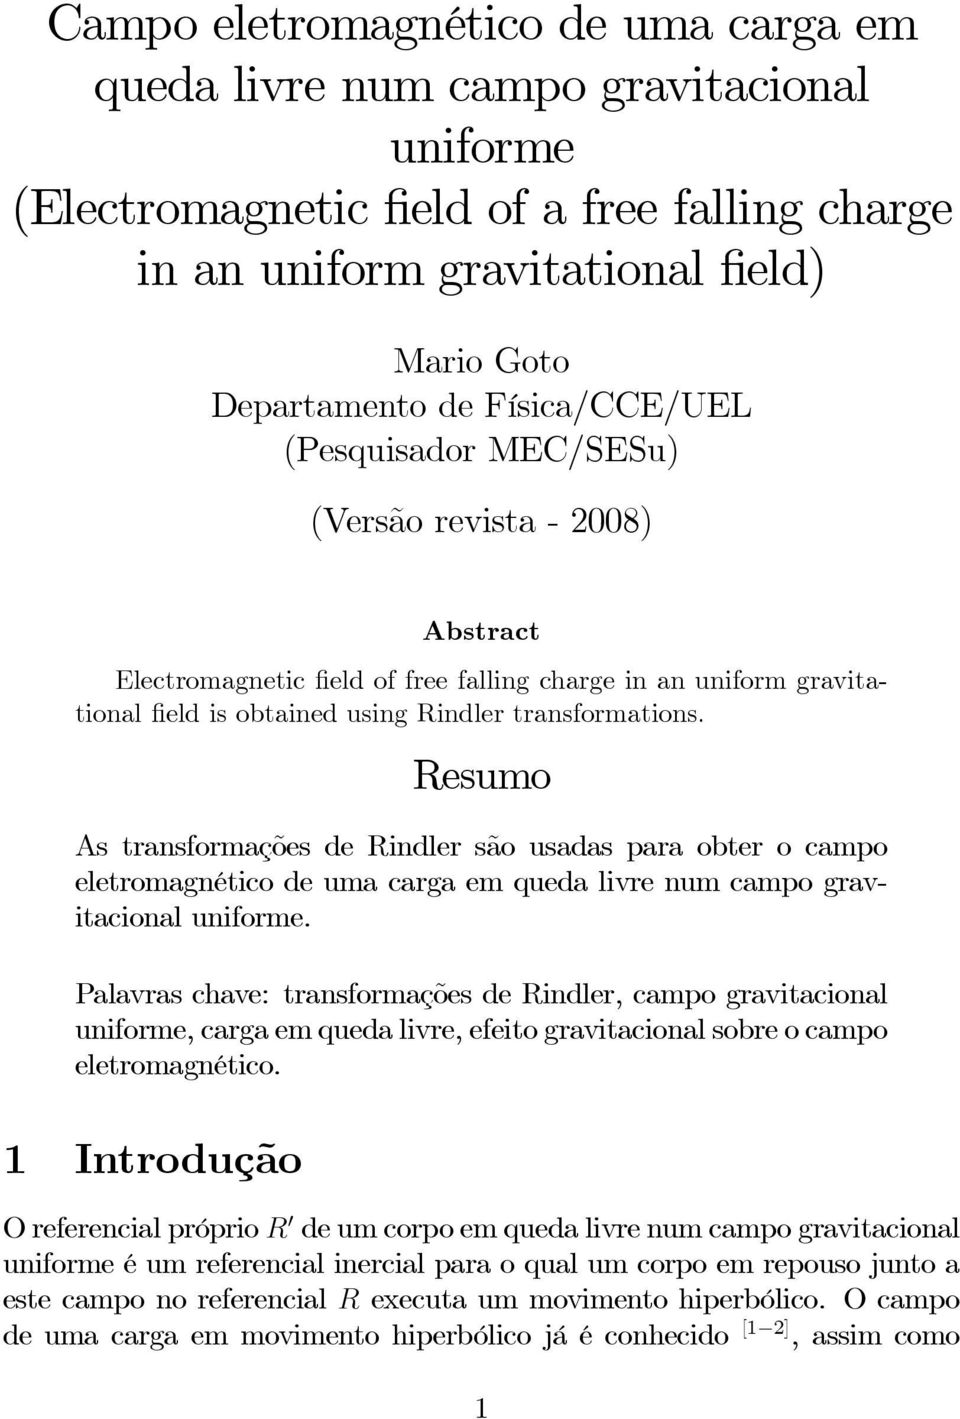 Resumo As transformações de Rindler são usadas para obter o campo eletromagnético de uma carga em queda livre num campo gravitacional uniforme.